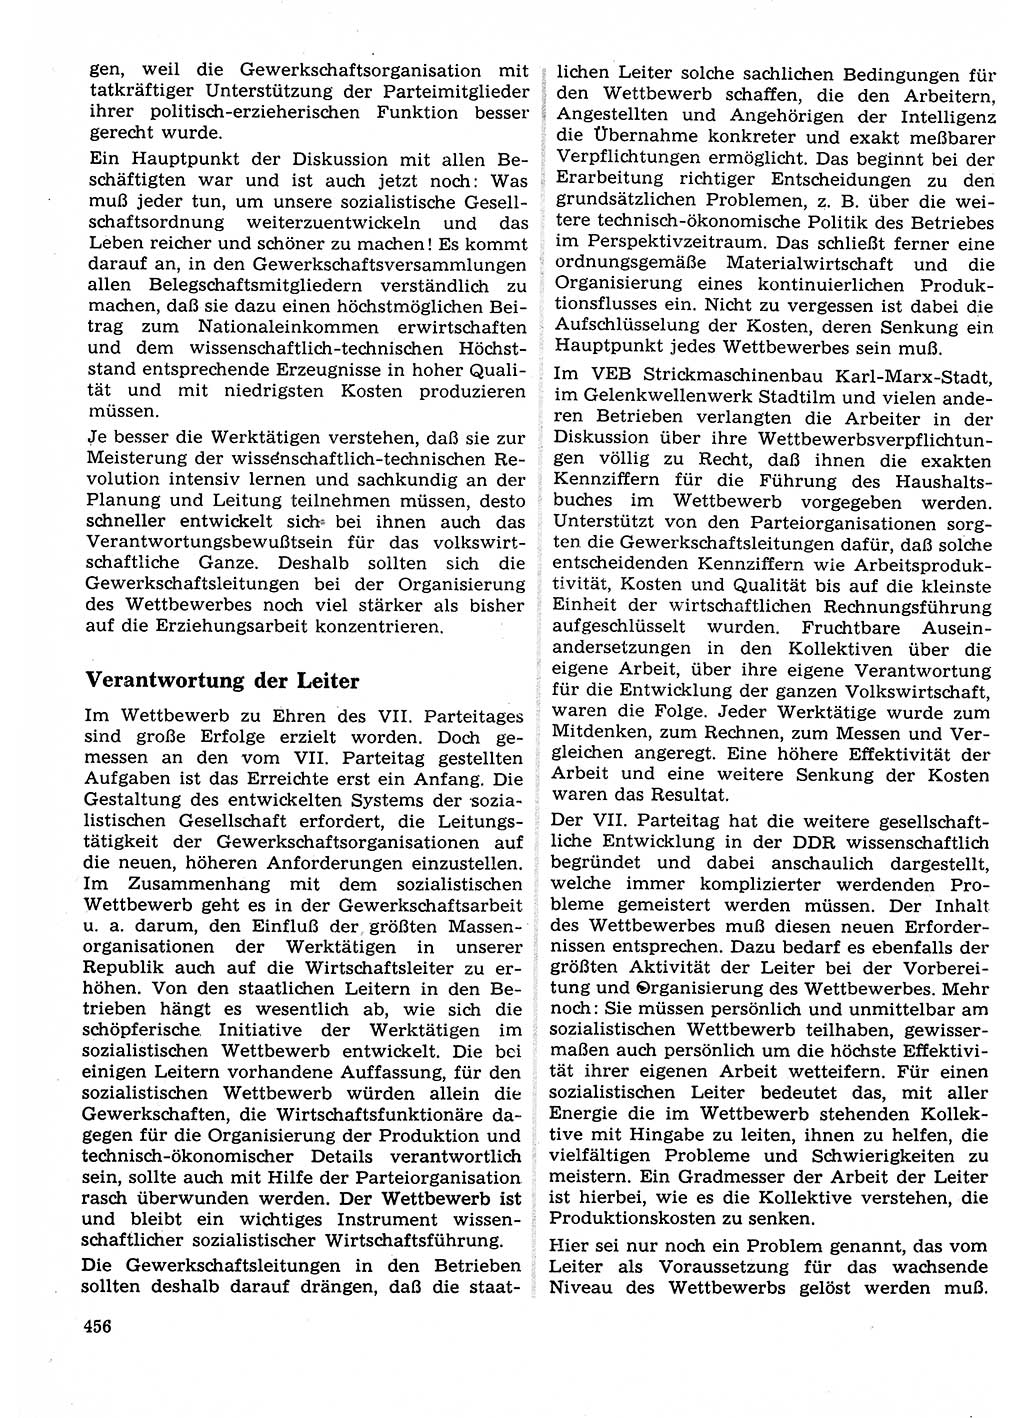 Neuer Weg (NW), Organ des Zentralkomitees (ZK) der SED (Sozialistische Einheitspartei Deutschlands) für Fragen des Parteilebens, 22. Jahrgang [Deutsche Demokratische Republik (DDR)] 1967, Seite 456 (NW ZK SED DDR 1967, S. 456)